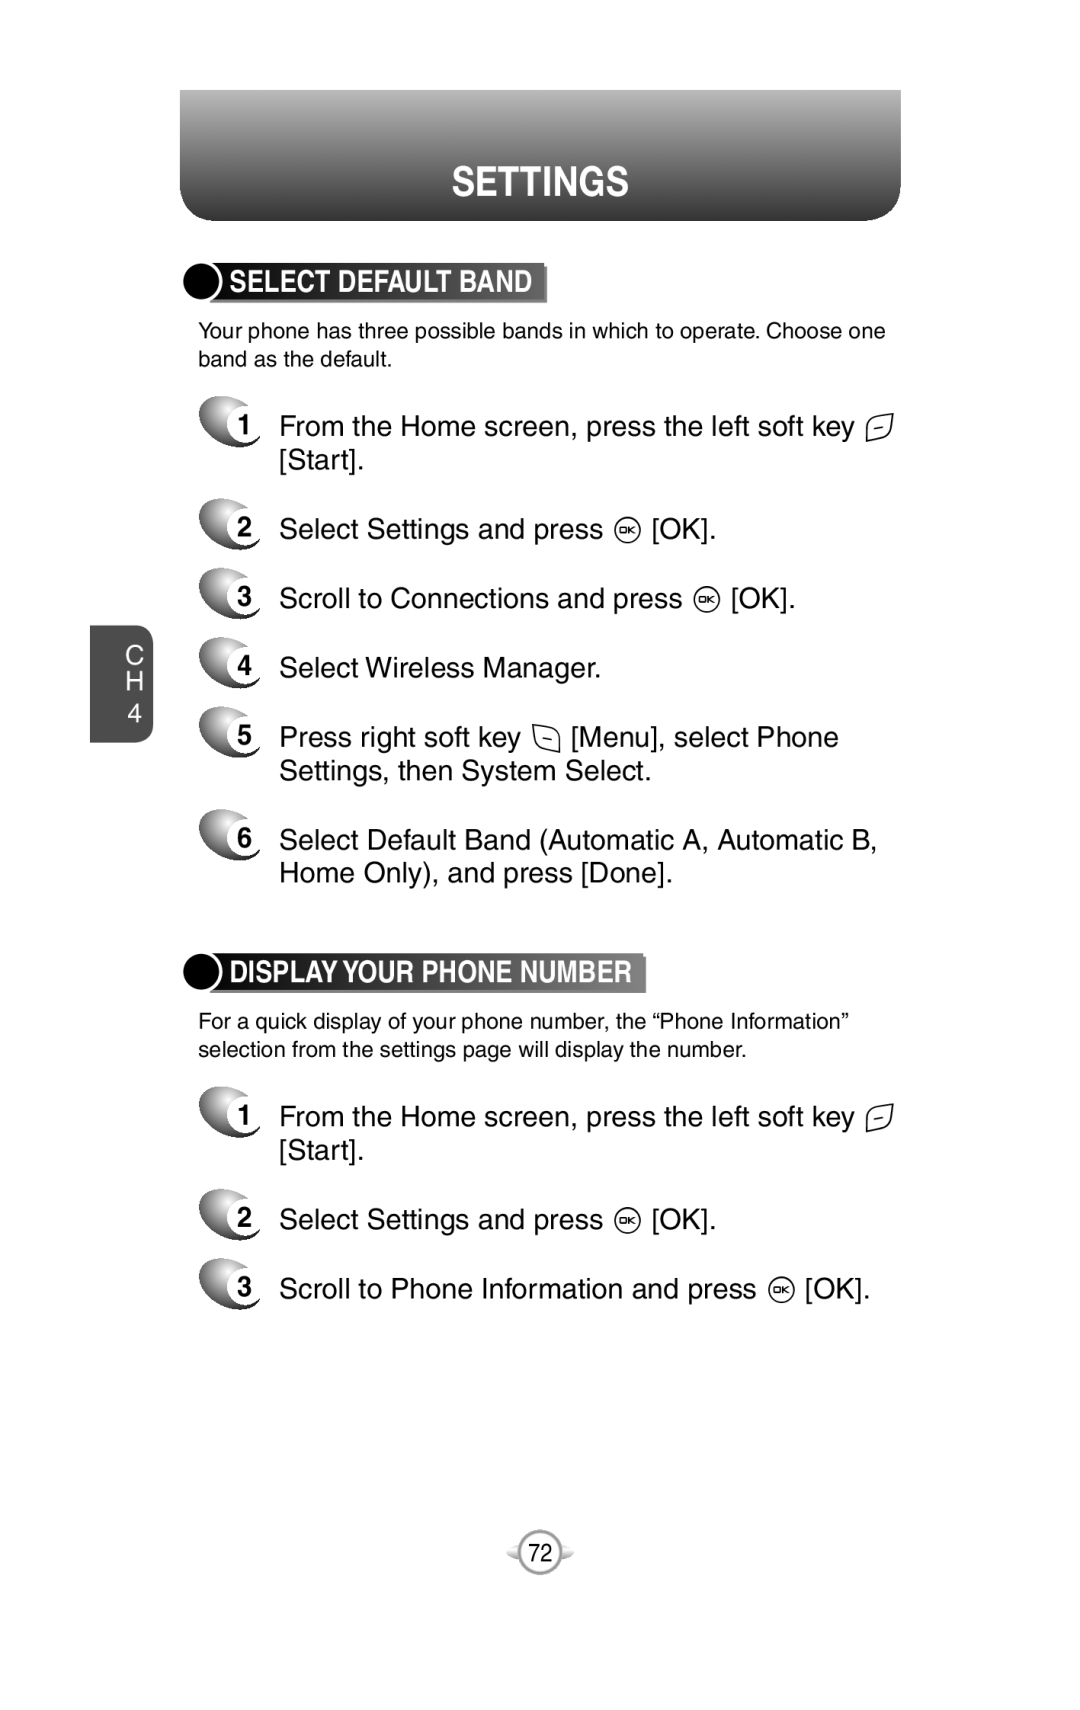 UTStarcom PN-820 user manual Select Default Band, Display Your Phone Number, Settings 